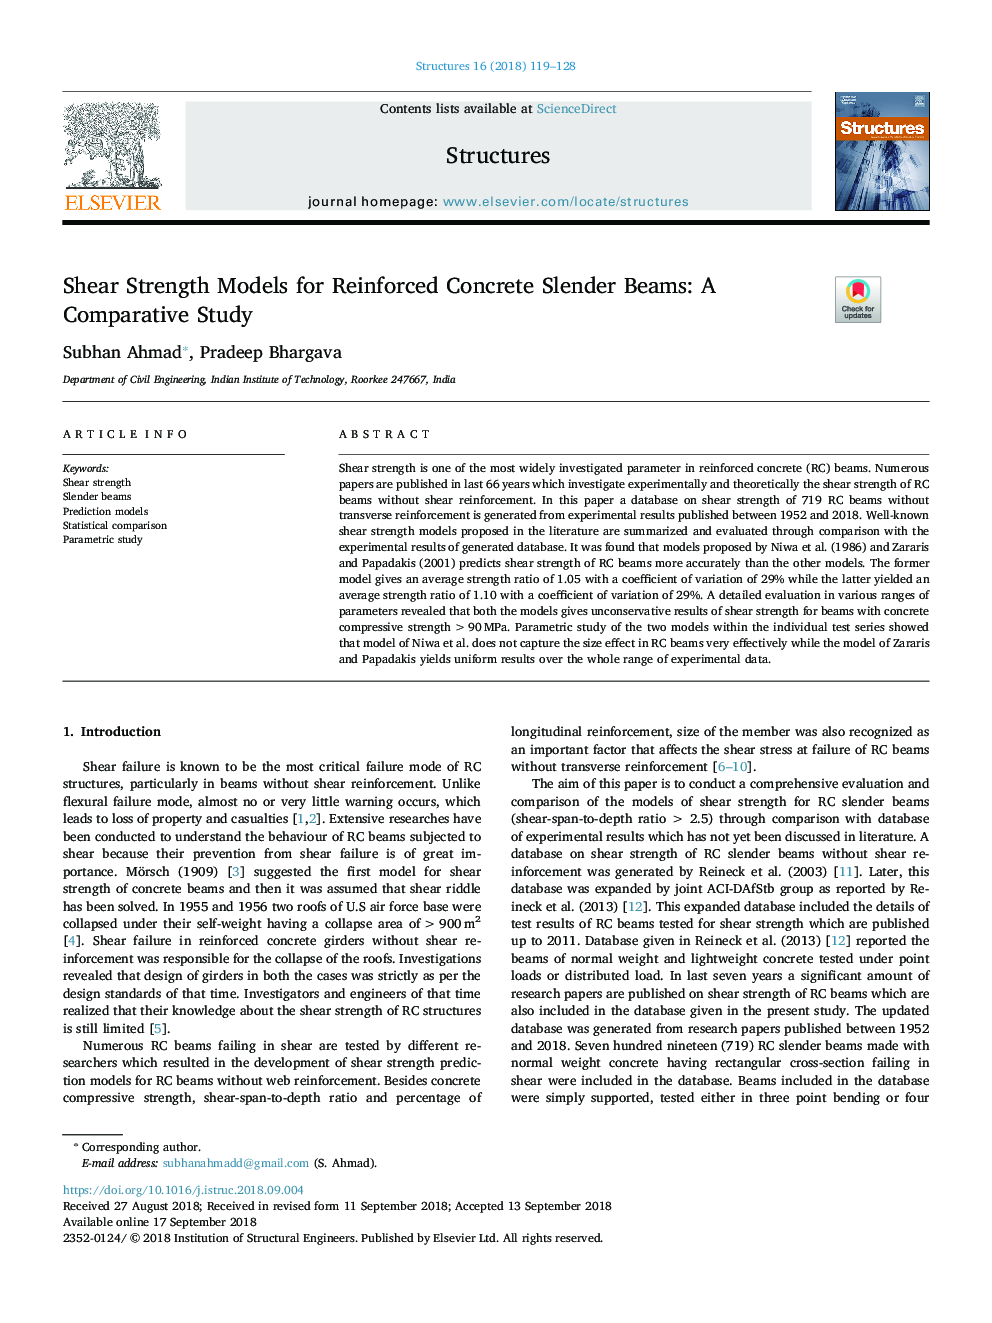 مدل های مقاومت برشی برای تیرهای بتنی تقویت شده: مطالعه مقایسه ای